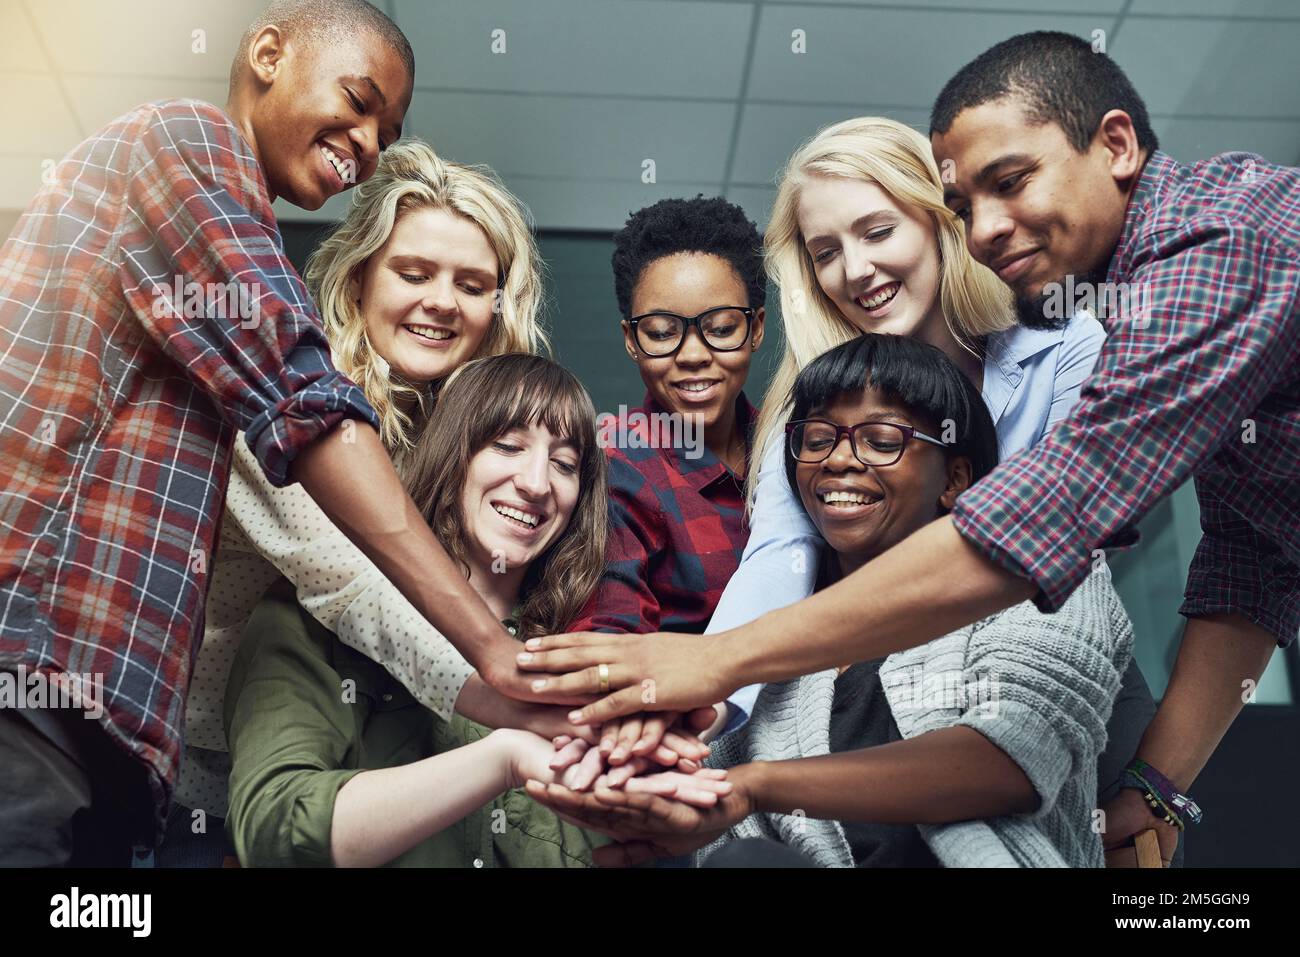 Teamarbeit und Zusammenarbeit. Eine Gruppe von Menschen, die ihre Hände zusammenlegen. Stockfoto